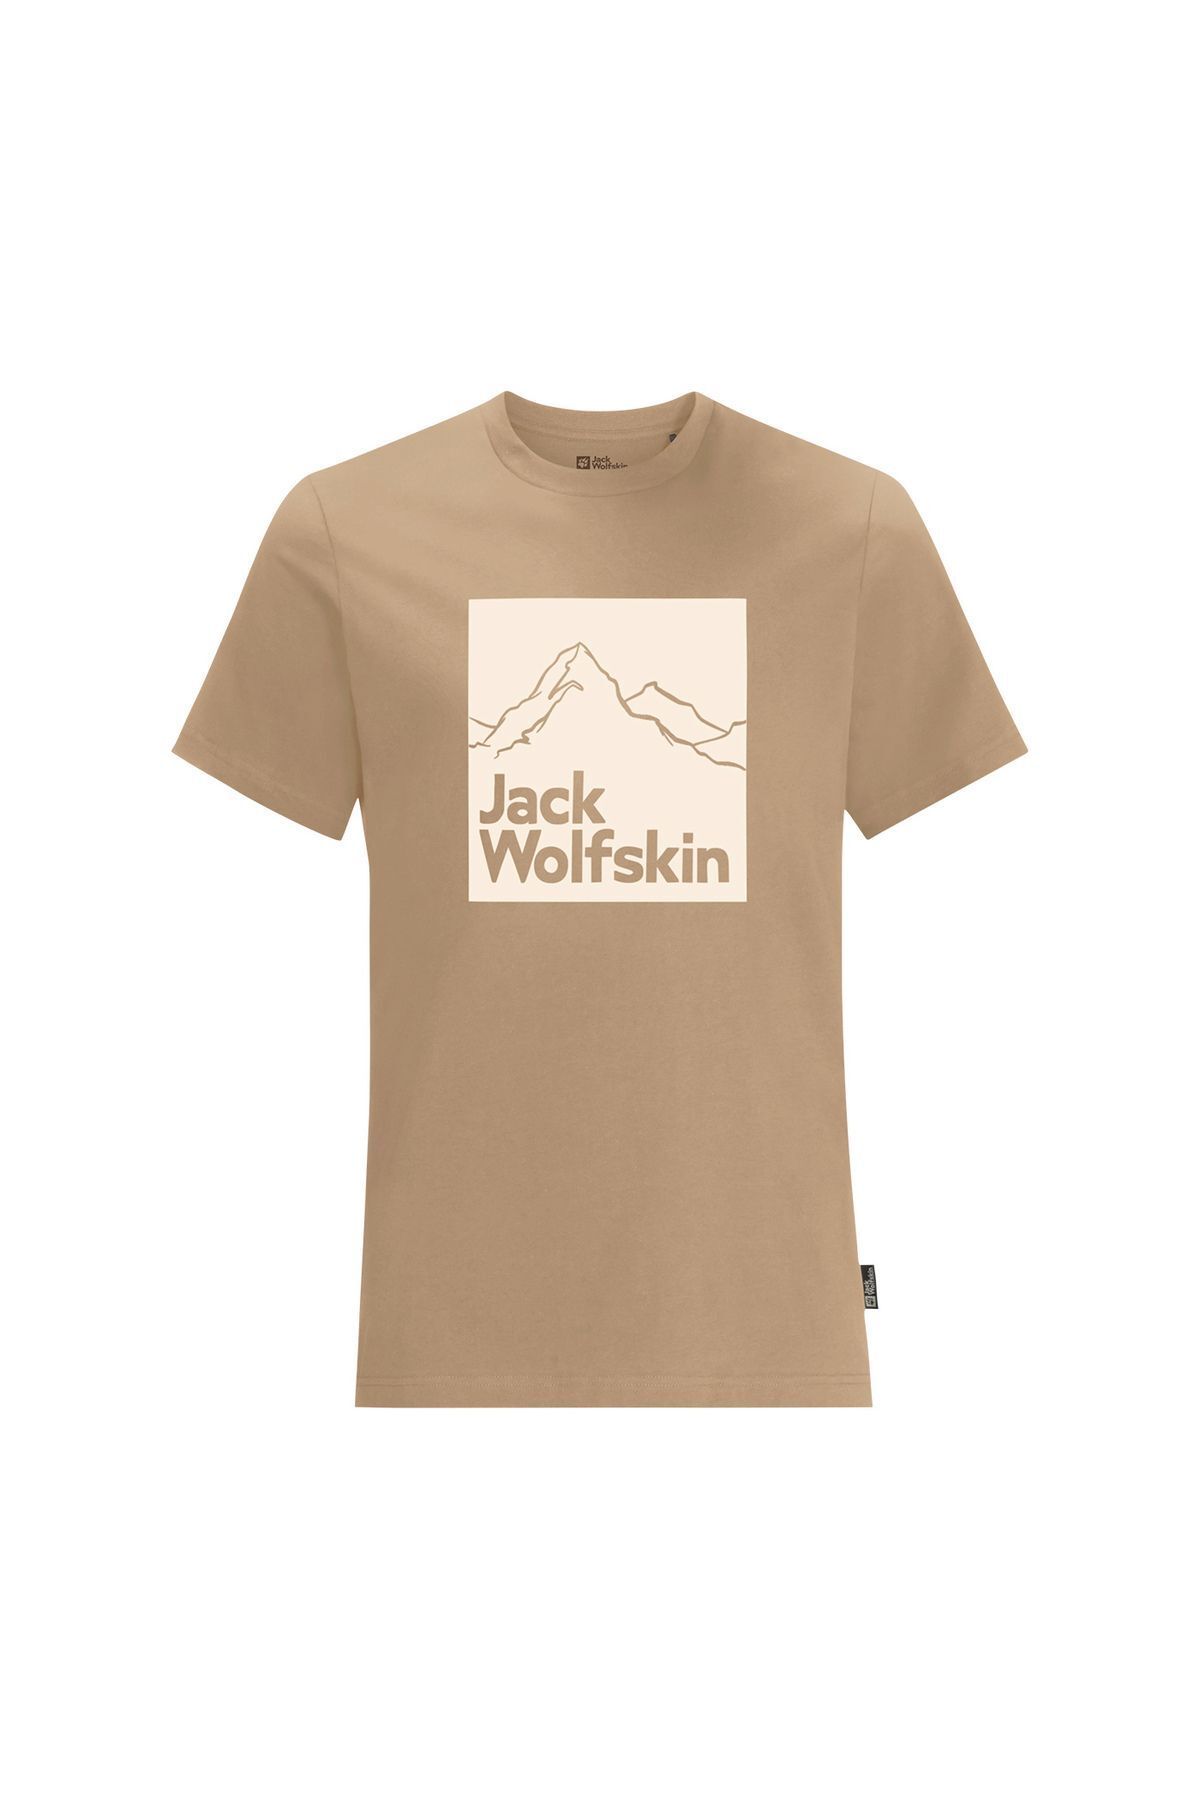 Jack Wolfskin Brand Erkek T-shirt